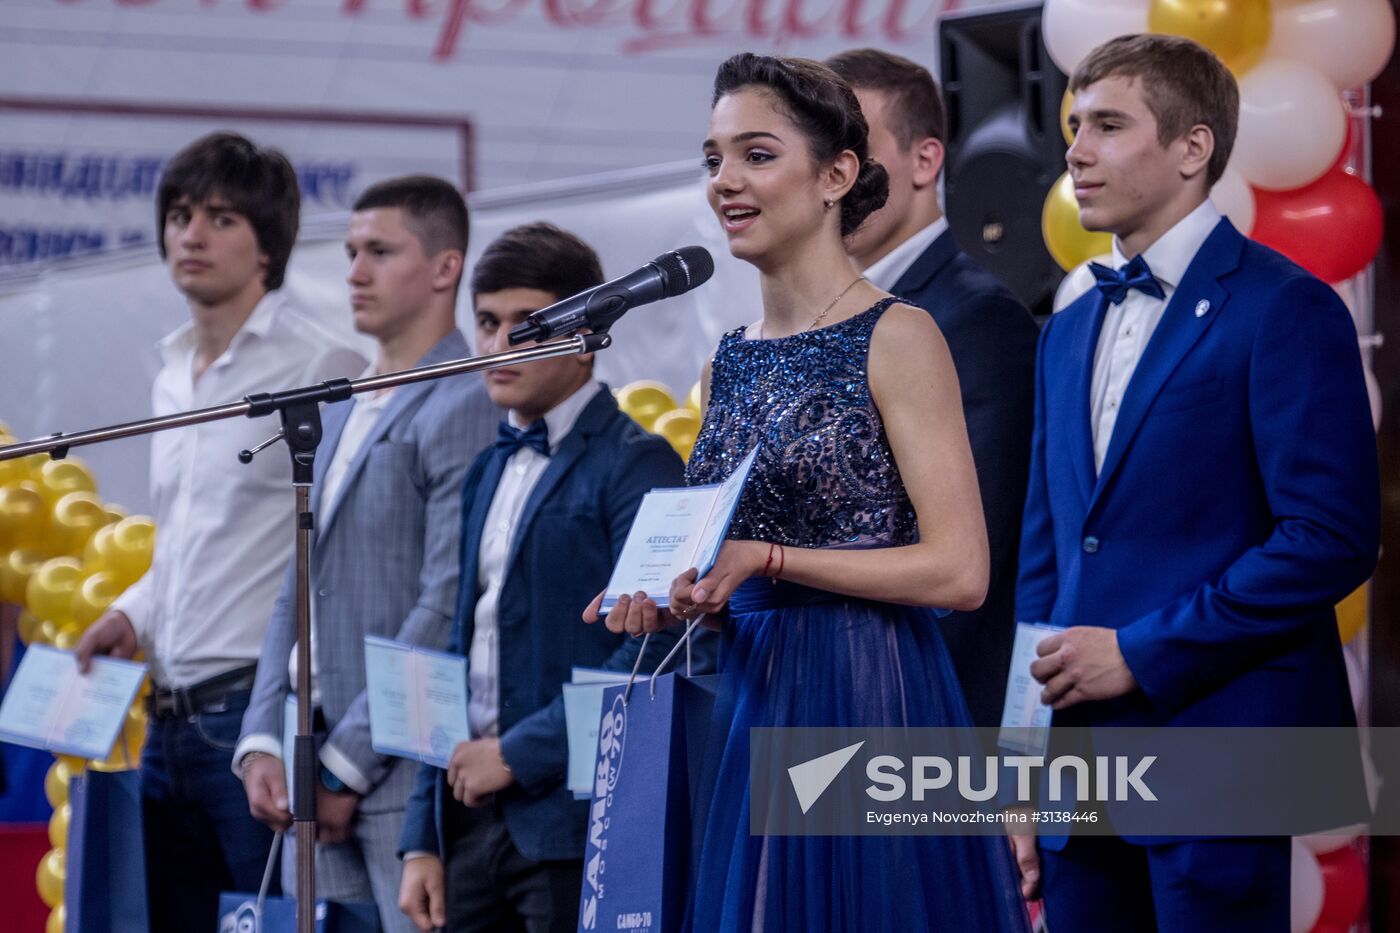 Figure skater Evgenia Medvedeva gets graduation certificate